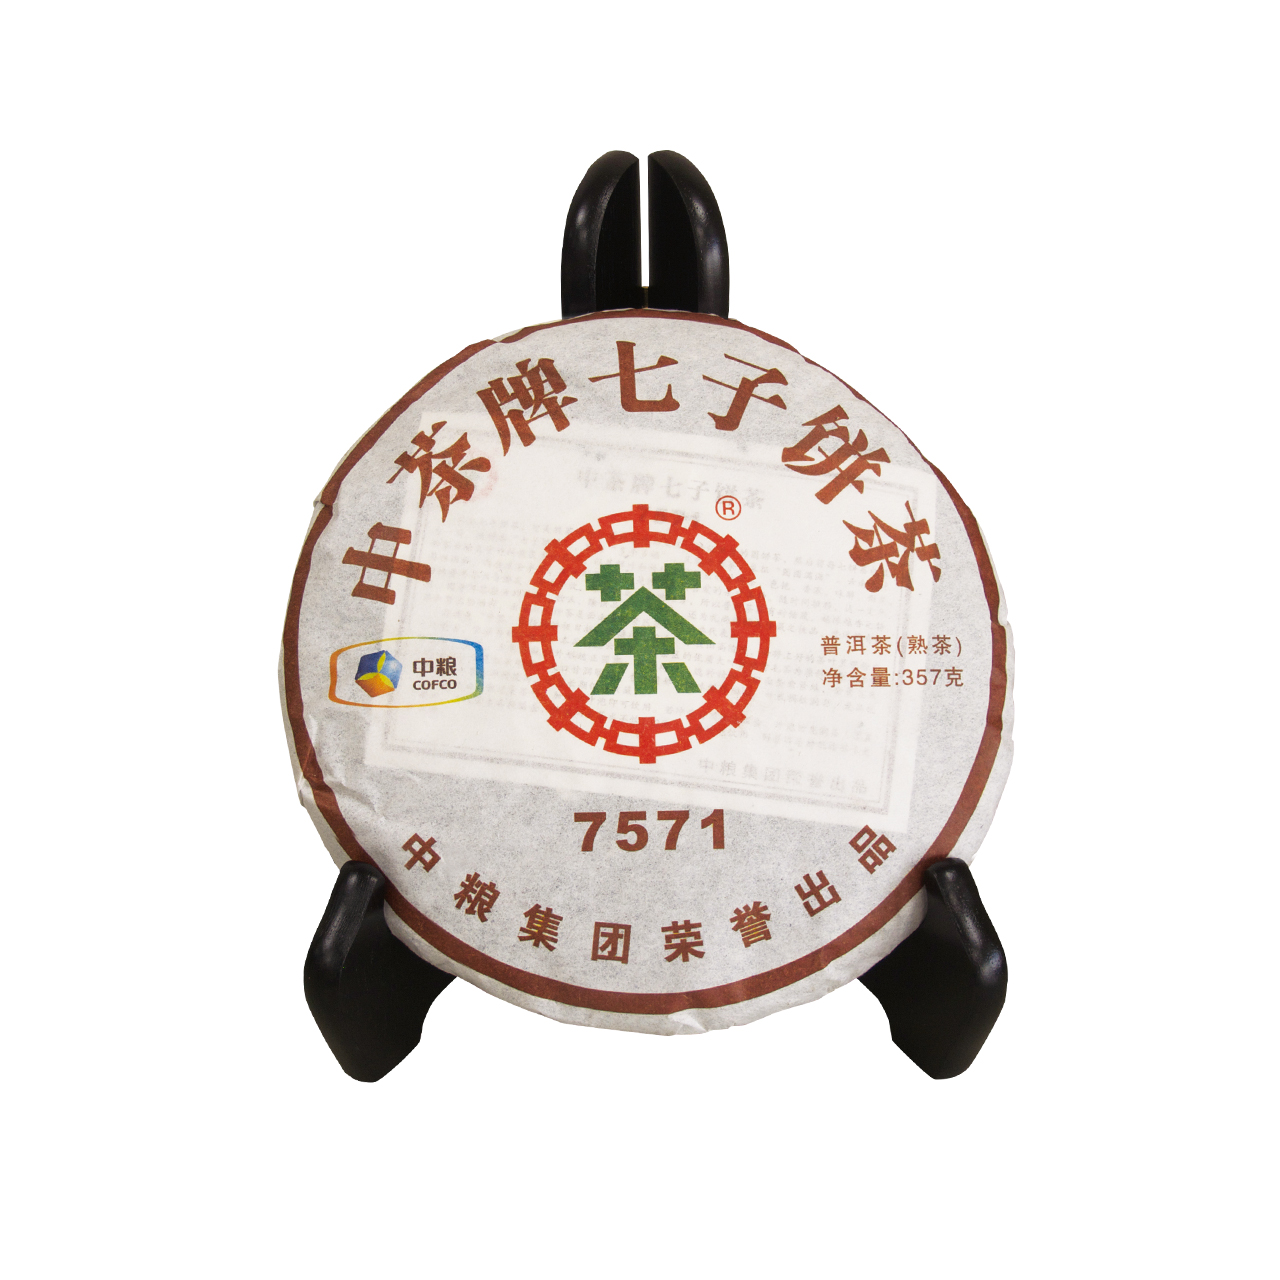 中茶牌七子餅茶(7571)(買一送一)